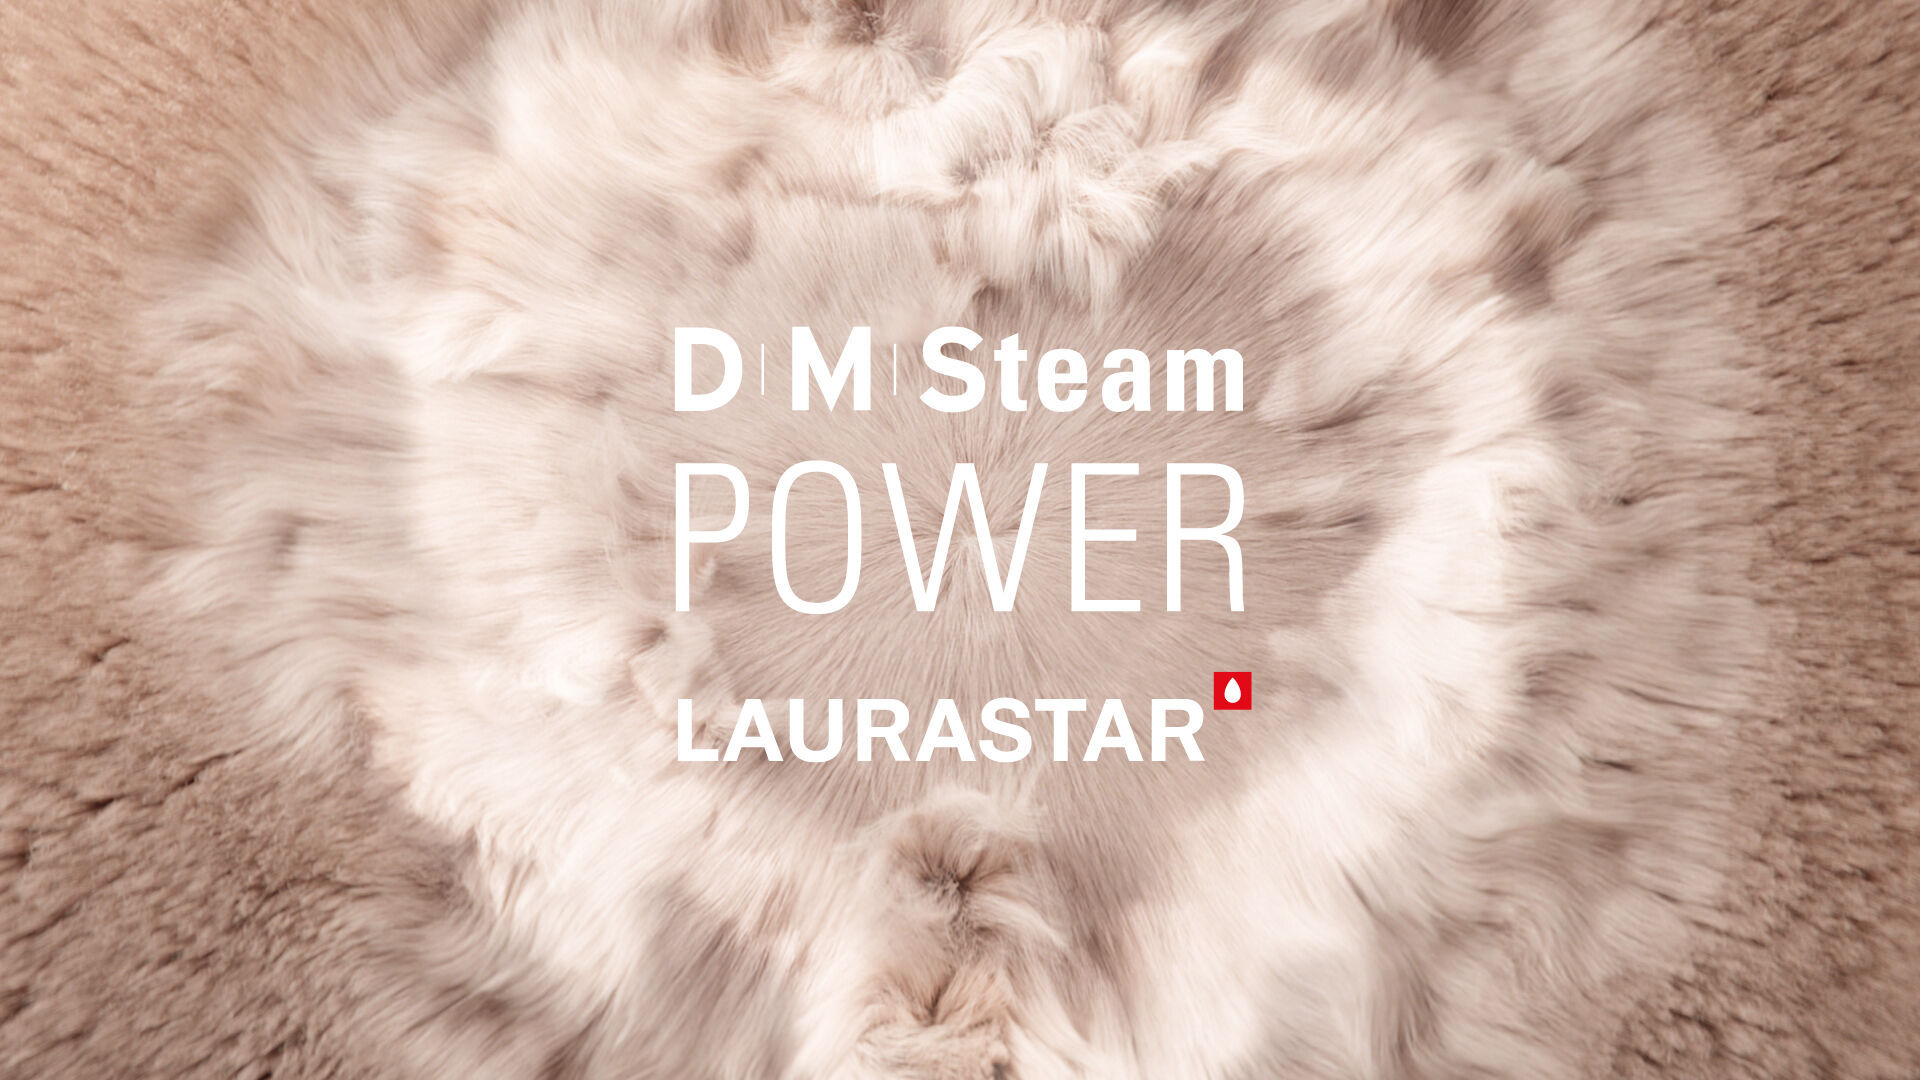 De DMS-stoom van Laurastar dringt diep door in de vezels van zelfs de meest delicate stoffen